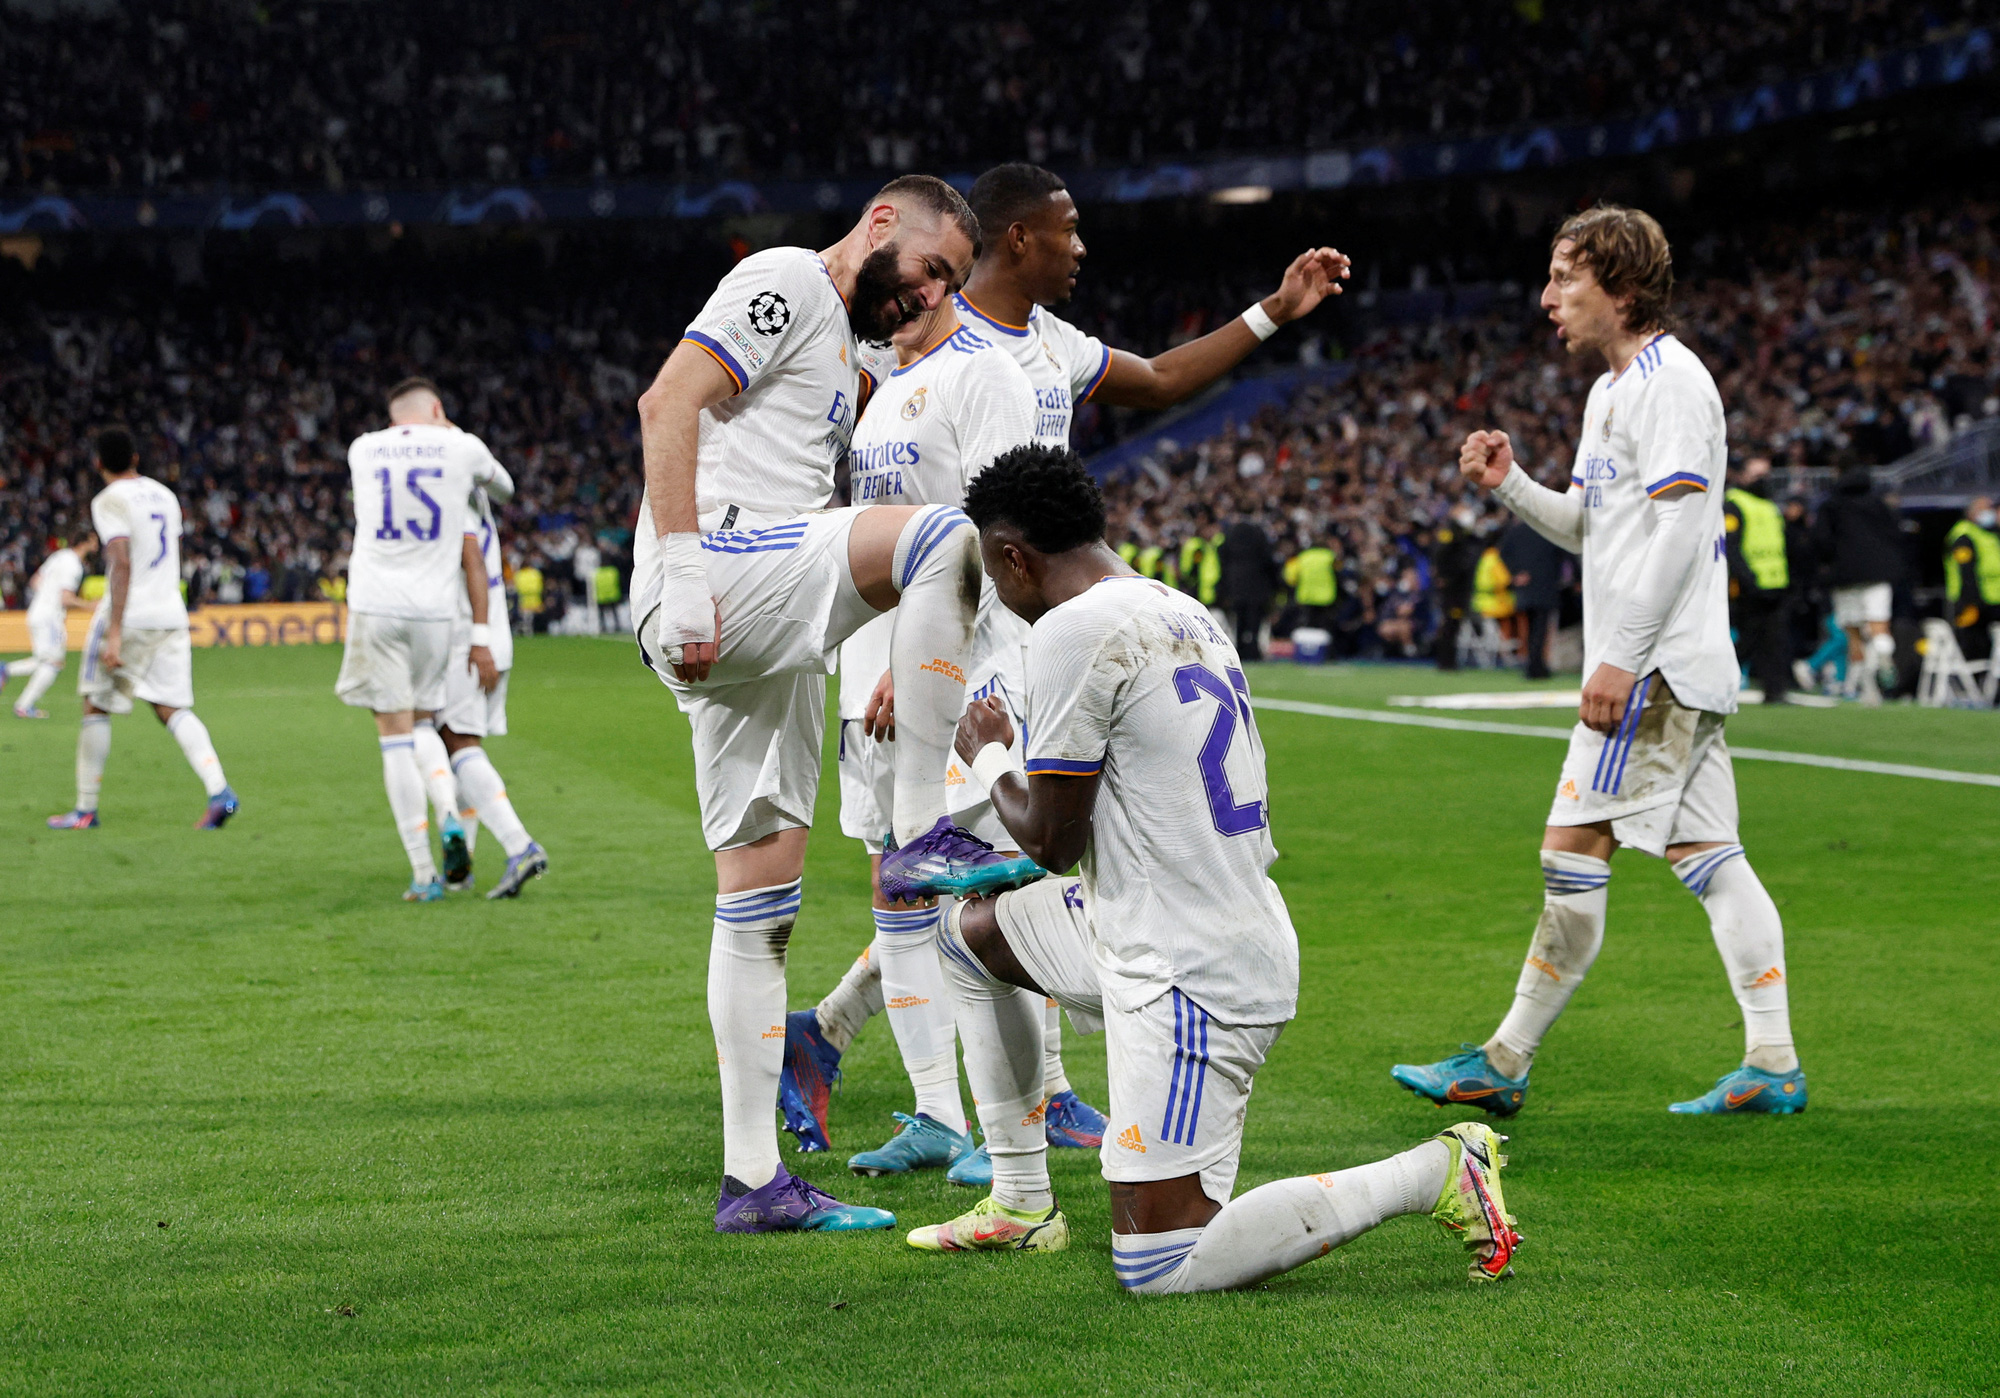 Real Madrid, PSG, Benzema, kỷ lục: Karim Benzema của Real Madrid đã lập kỷ lục ghi bàn khiến Paris Saint-Germain chật vật trong trận đấu mới đây. Hình ảnh của Benzema ghi bàn sẽ khiến những người yêu bóng đá không thể rời mắt. Hãy thưởng thức hình ảnh của trận đấu để có những trải nghiệm bóng đá tuyệt vời.